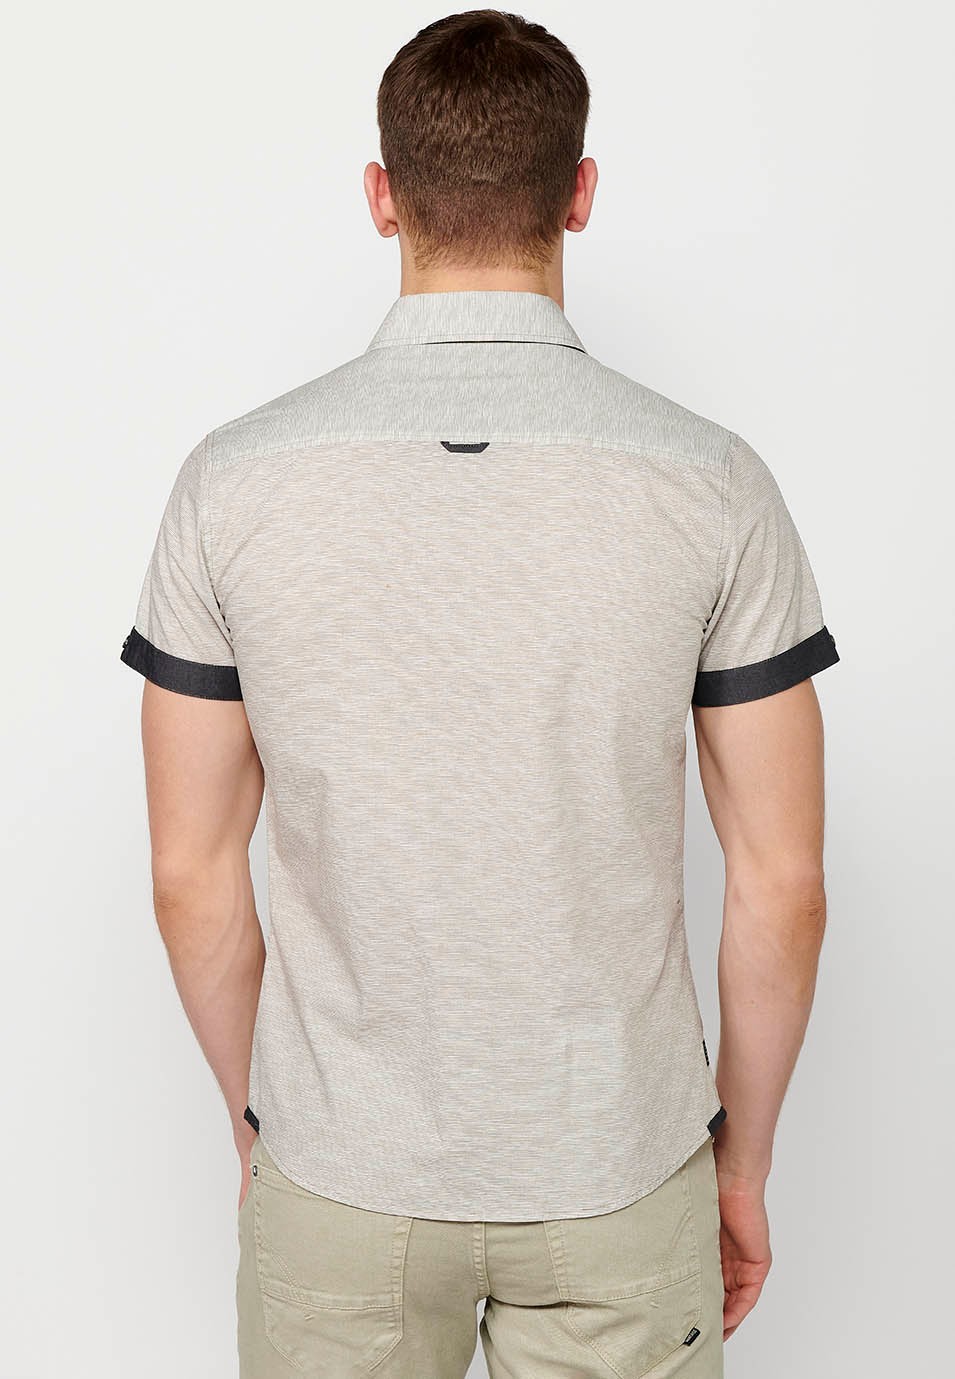 Kurzärmliges Button-Down-Hemd aus Baumwolle, graue Farbe für Herren